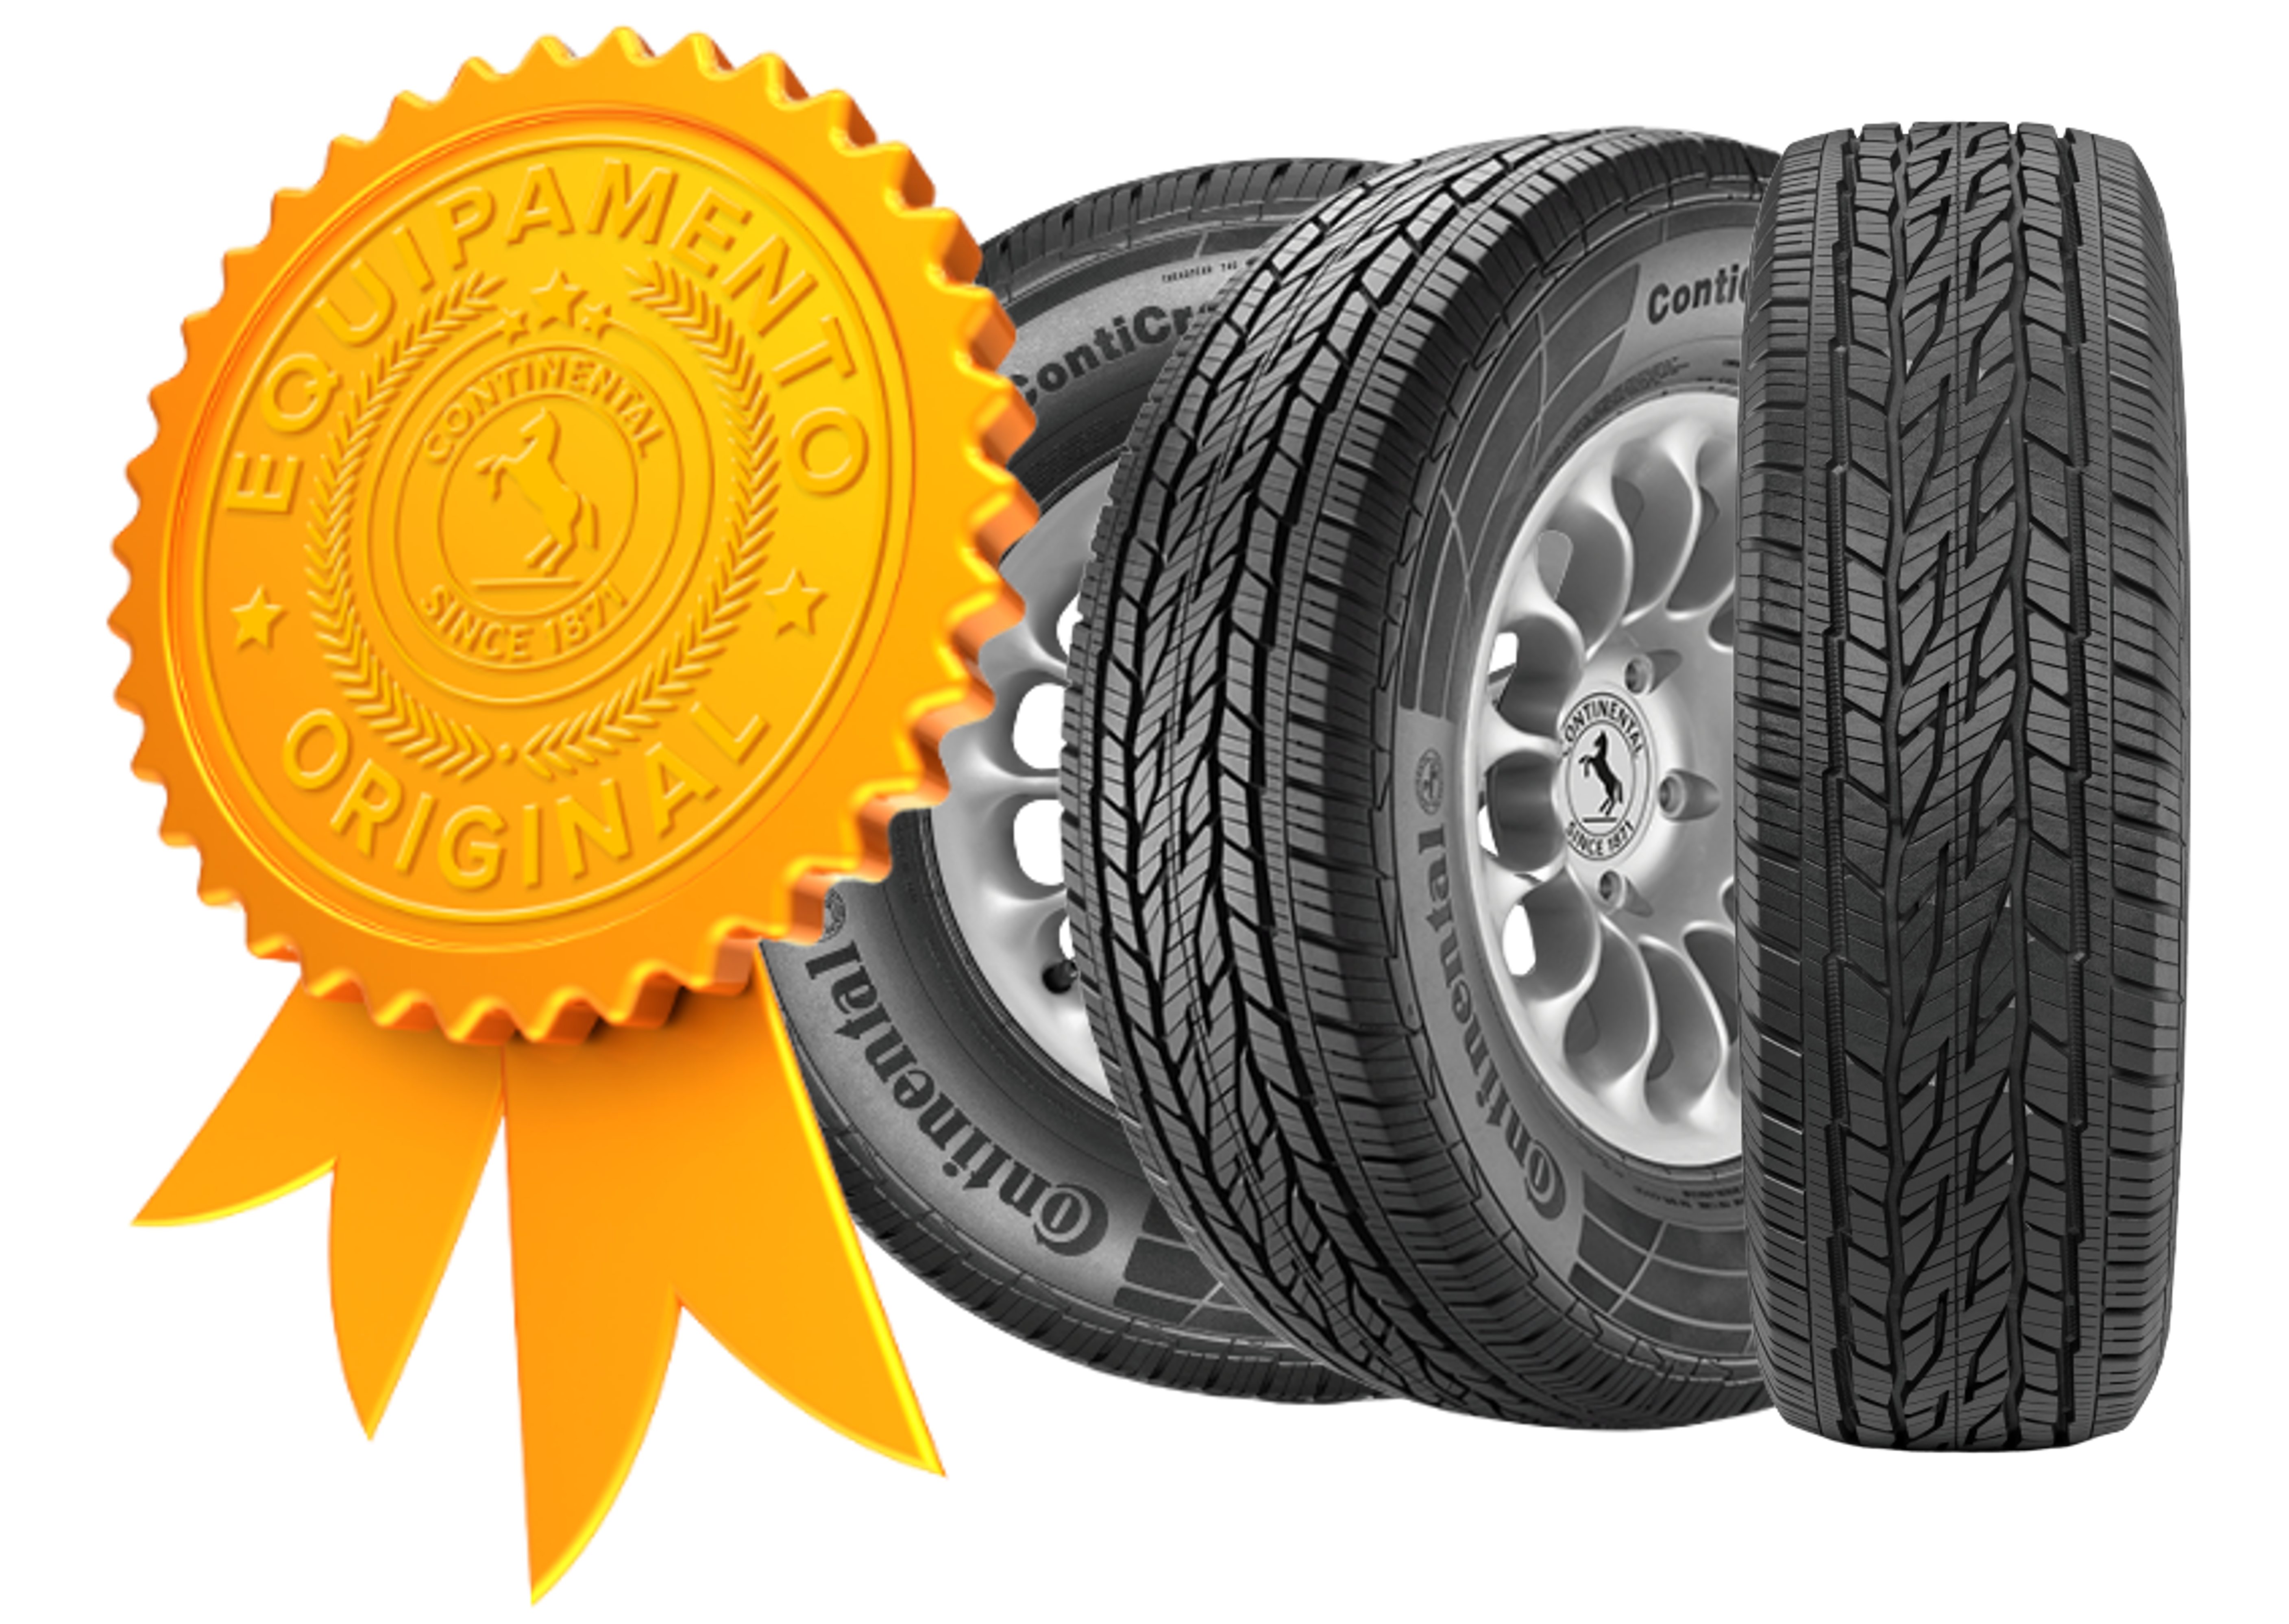 (arte com selo de qualidade de pneu original da Jeep a e três fotos do pneu original da Jeep Compass em ângulos diferentes)